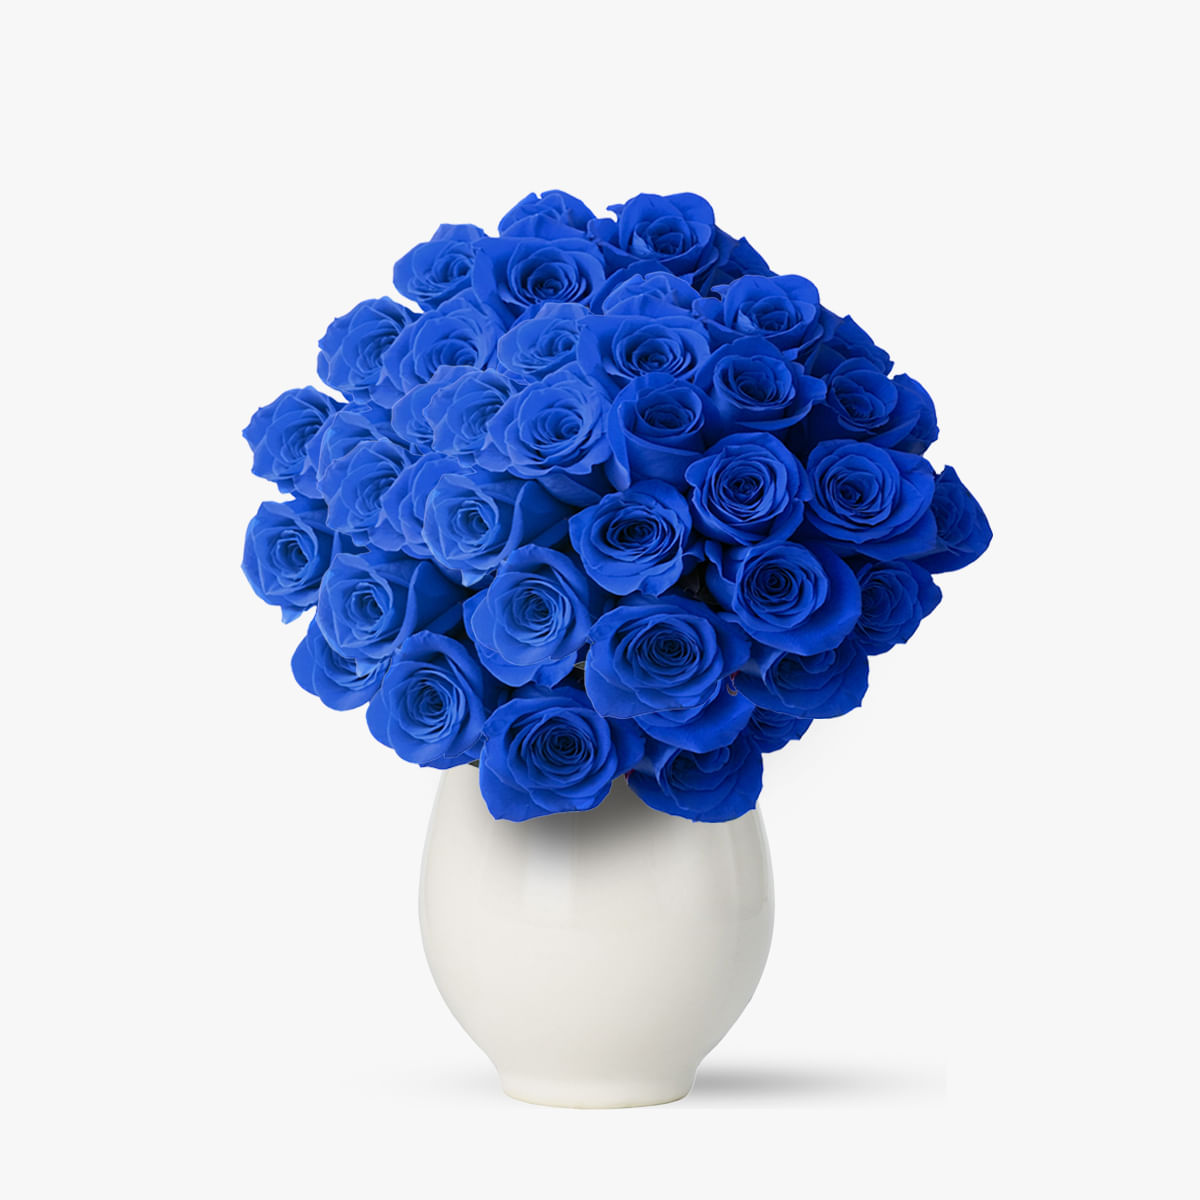 Buchet 101 trandafiri albastri – Standard